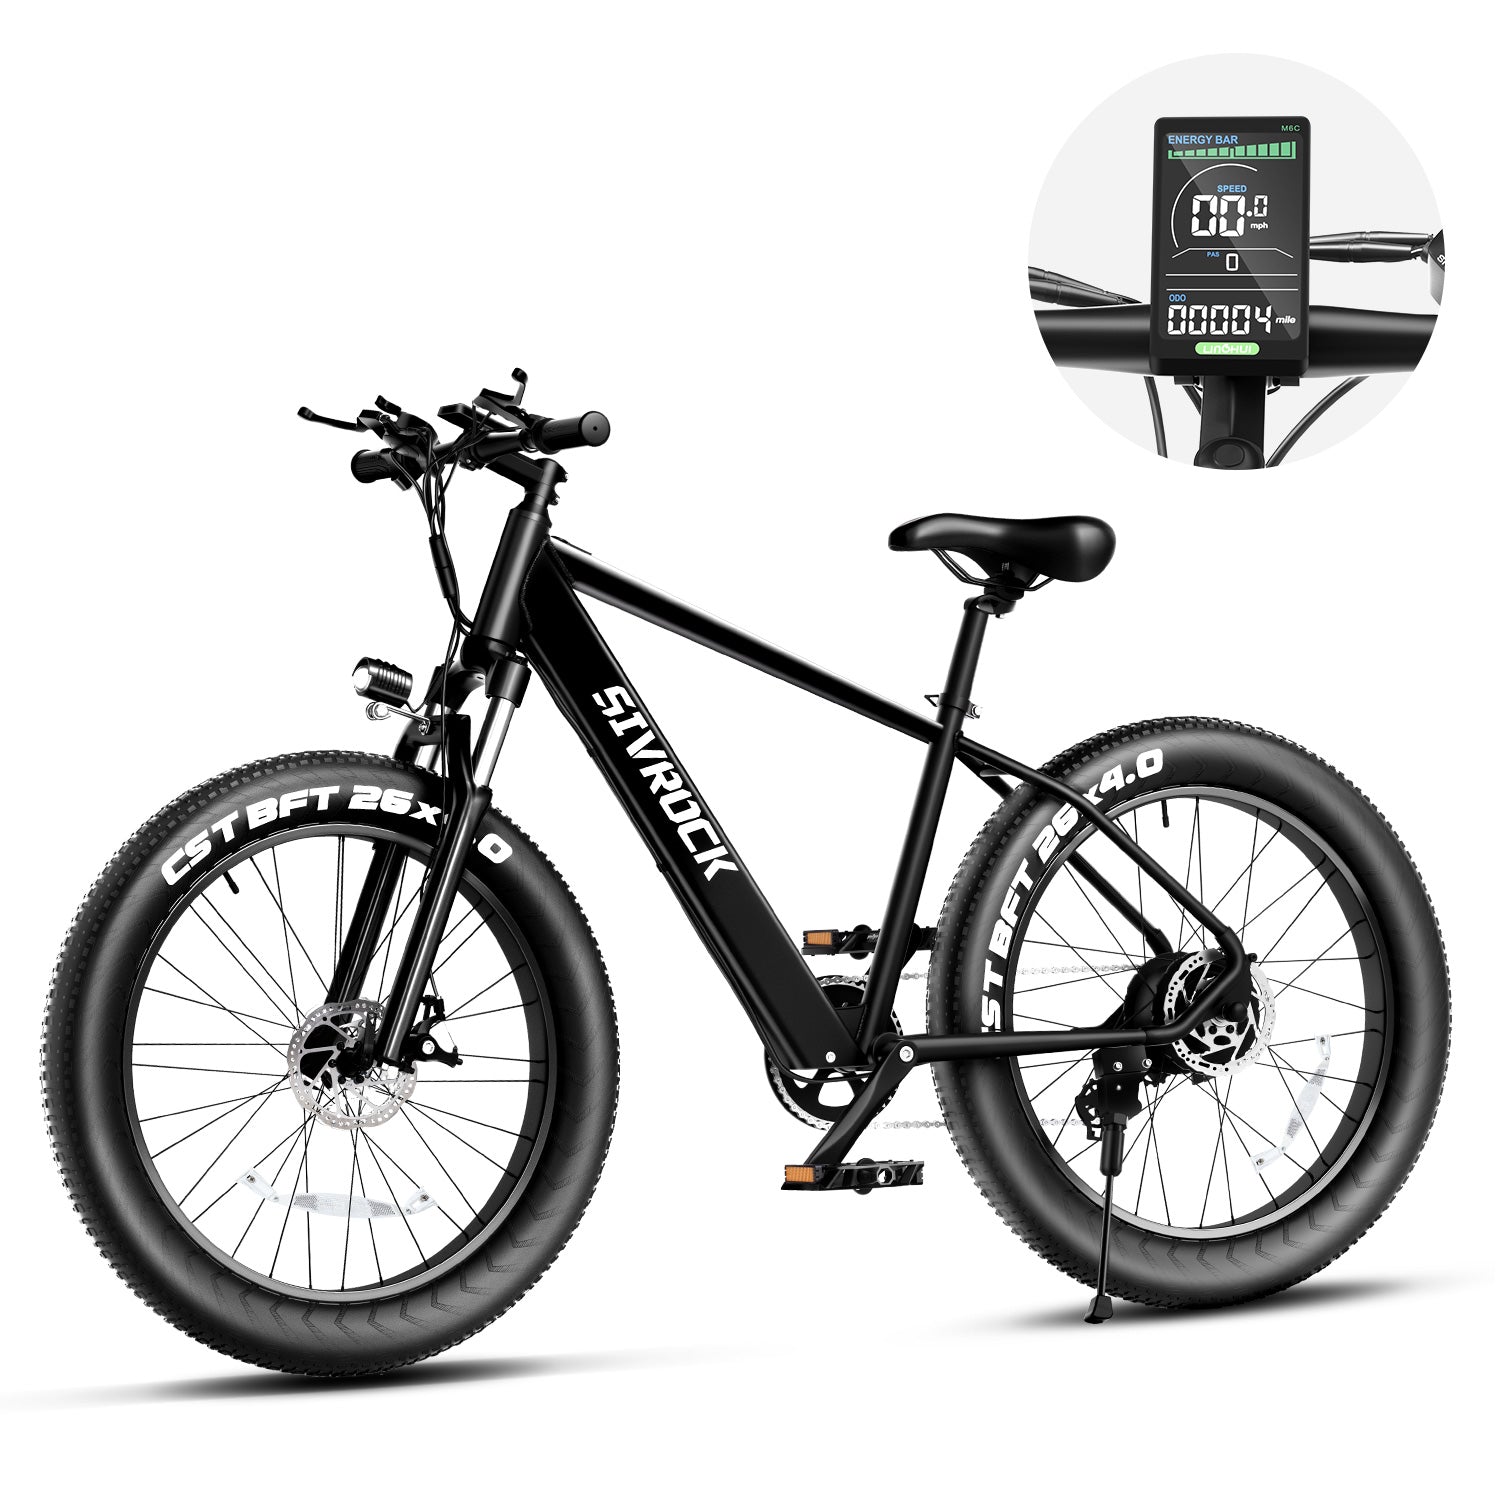 E-bike Professional Electric Bike ebike for Sale